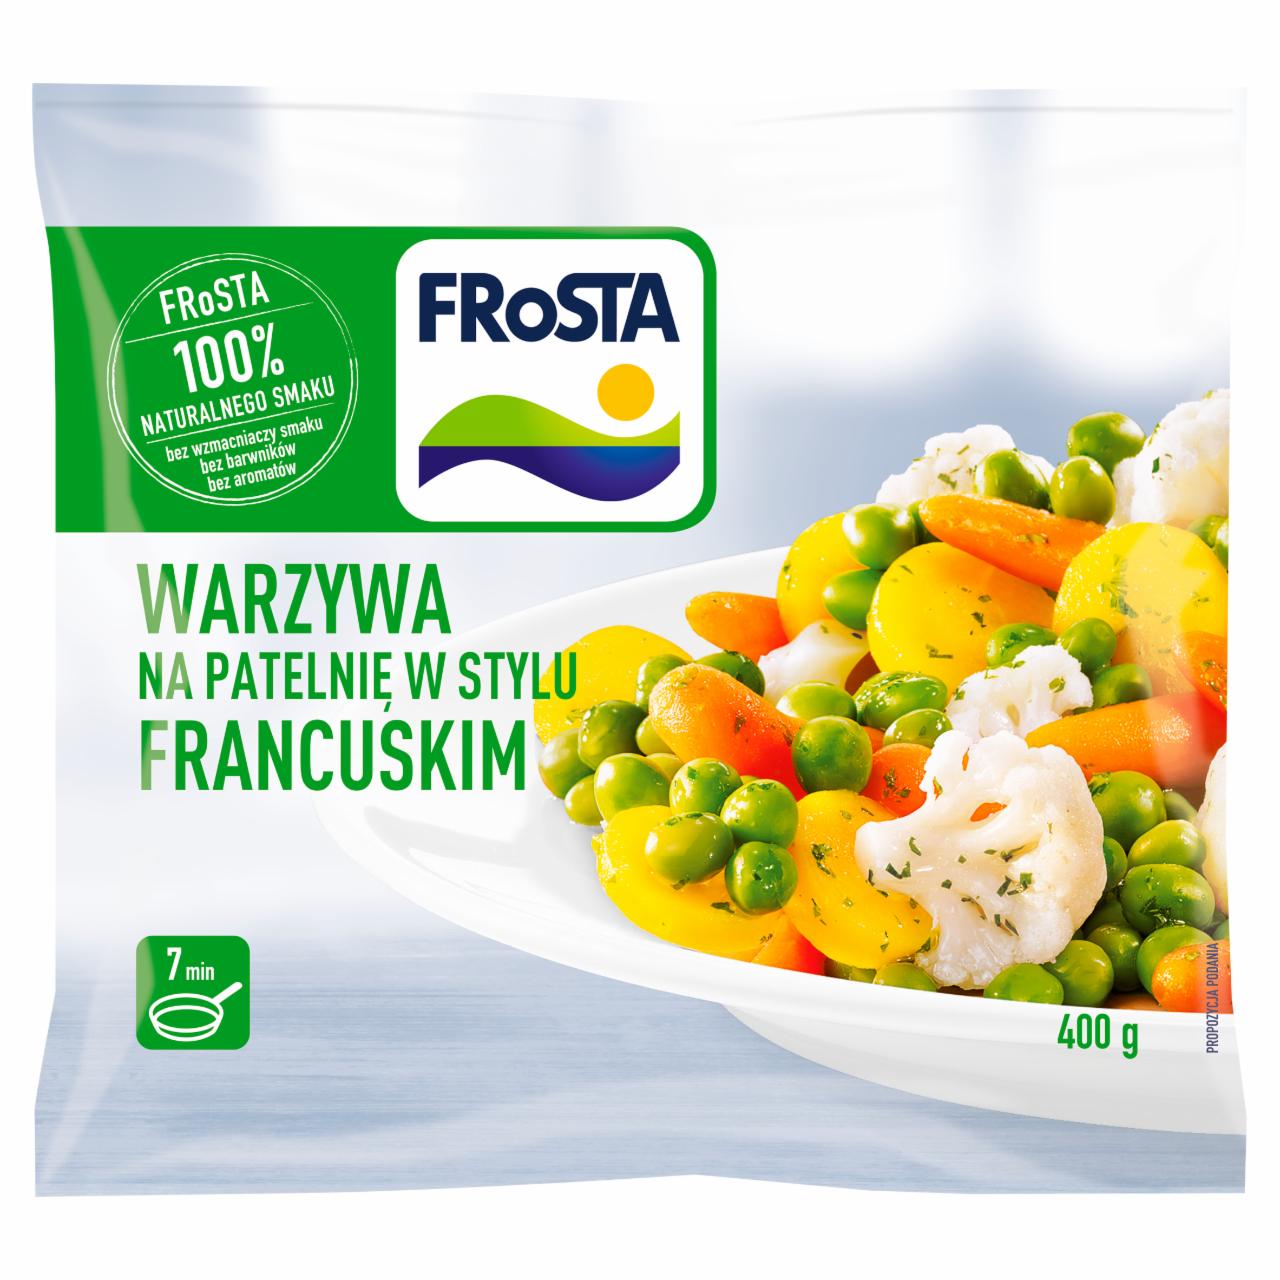 Zdjęcia - FRoSTA Warzywa na patelnię w stylu francuskim 400 g